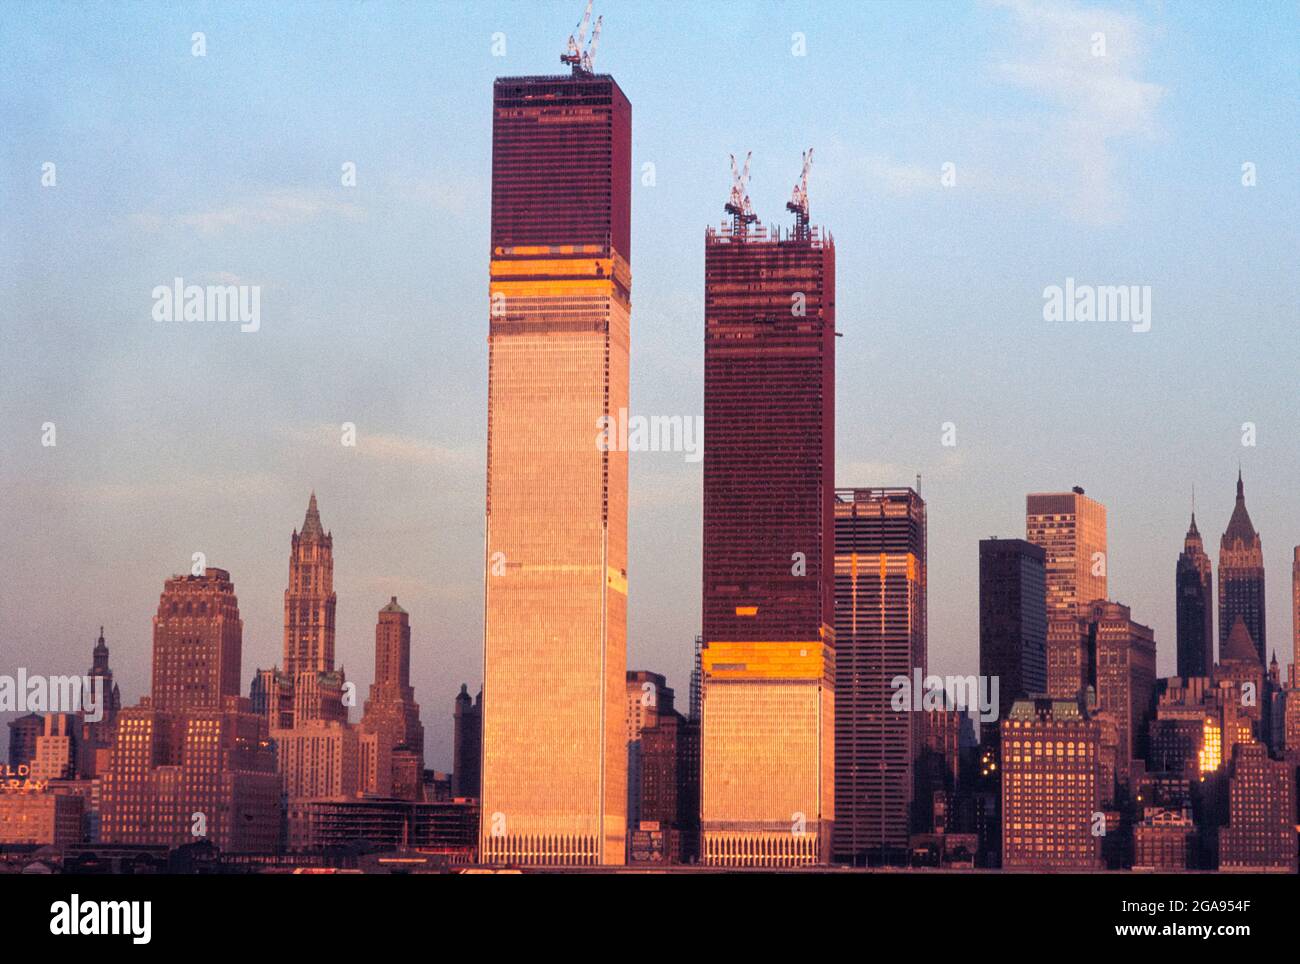 https://c8.alamy.com/comp/2GA954F/world-trade-center-under-construction-new-york-city-new-york-usa-bernard-gotfryd-1970-2GA954F.jpg